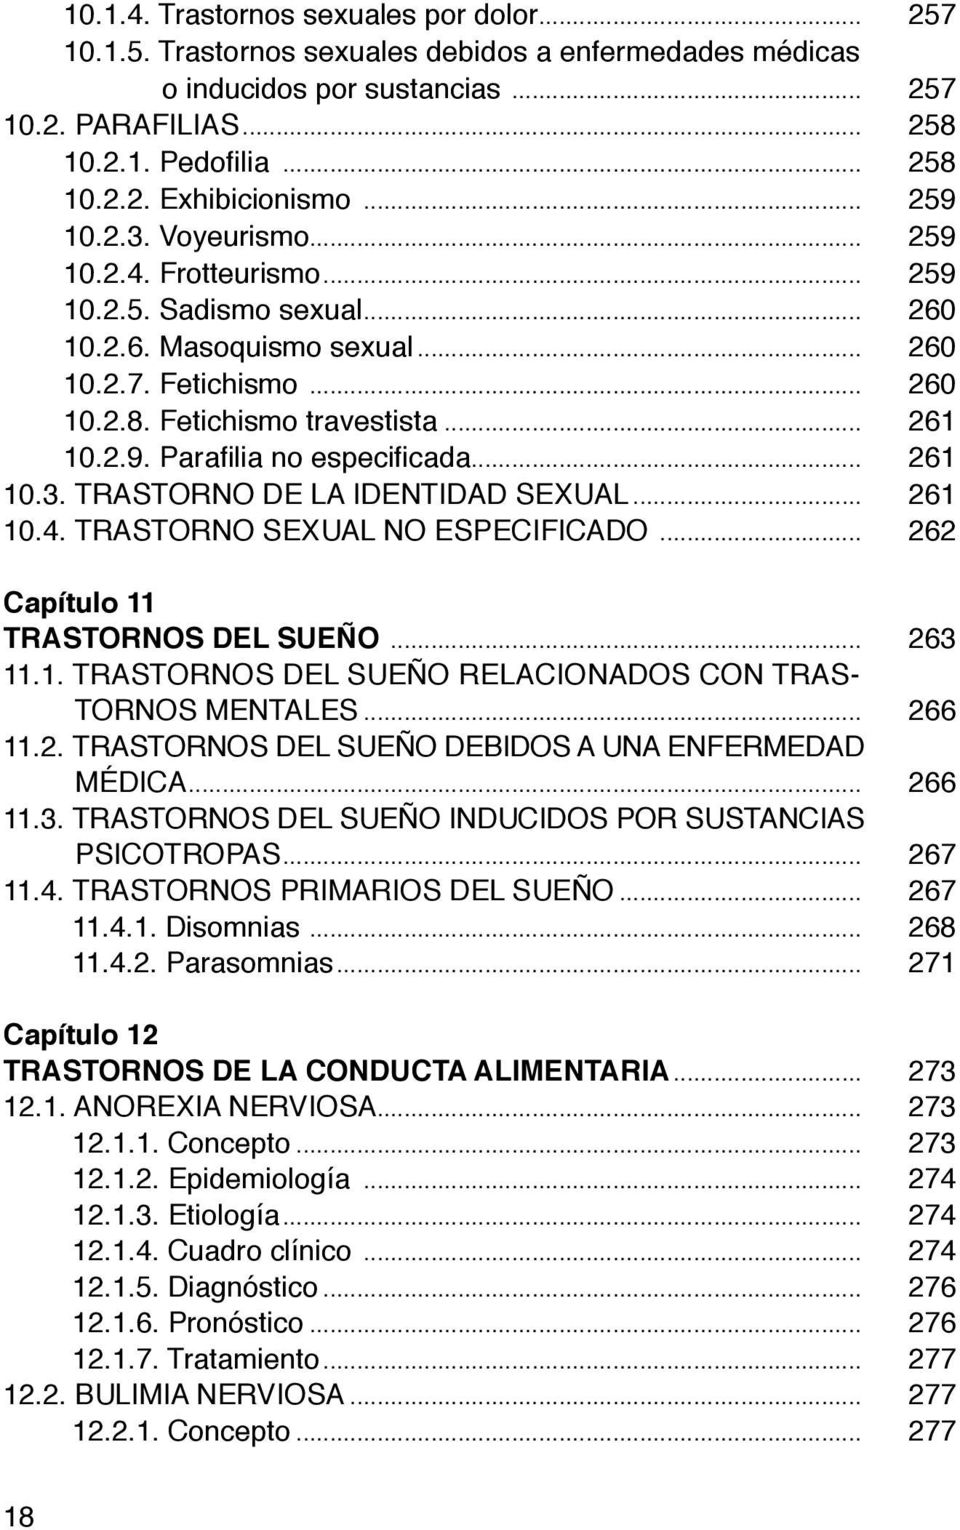 .. 261 10.3. TRASTORNO DE LA IDENTIDAD SEXUAL... 261 10.4. TRASTORNO SEXUAL NO ESPECIFICADO... 262 Capítulo 11 TRASTORNOS DEL SUEÑO... 263 11.1. TRASTORNOS DEL SUEÑO RELACIONADOS CON TRAS- TORNOS MENTALES.